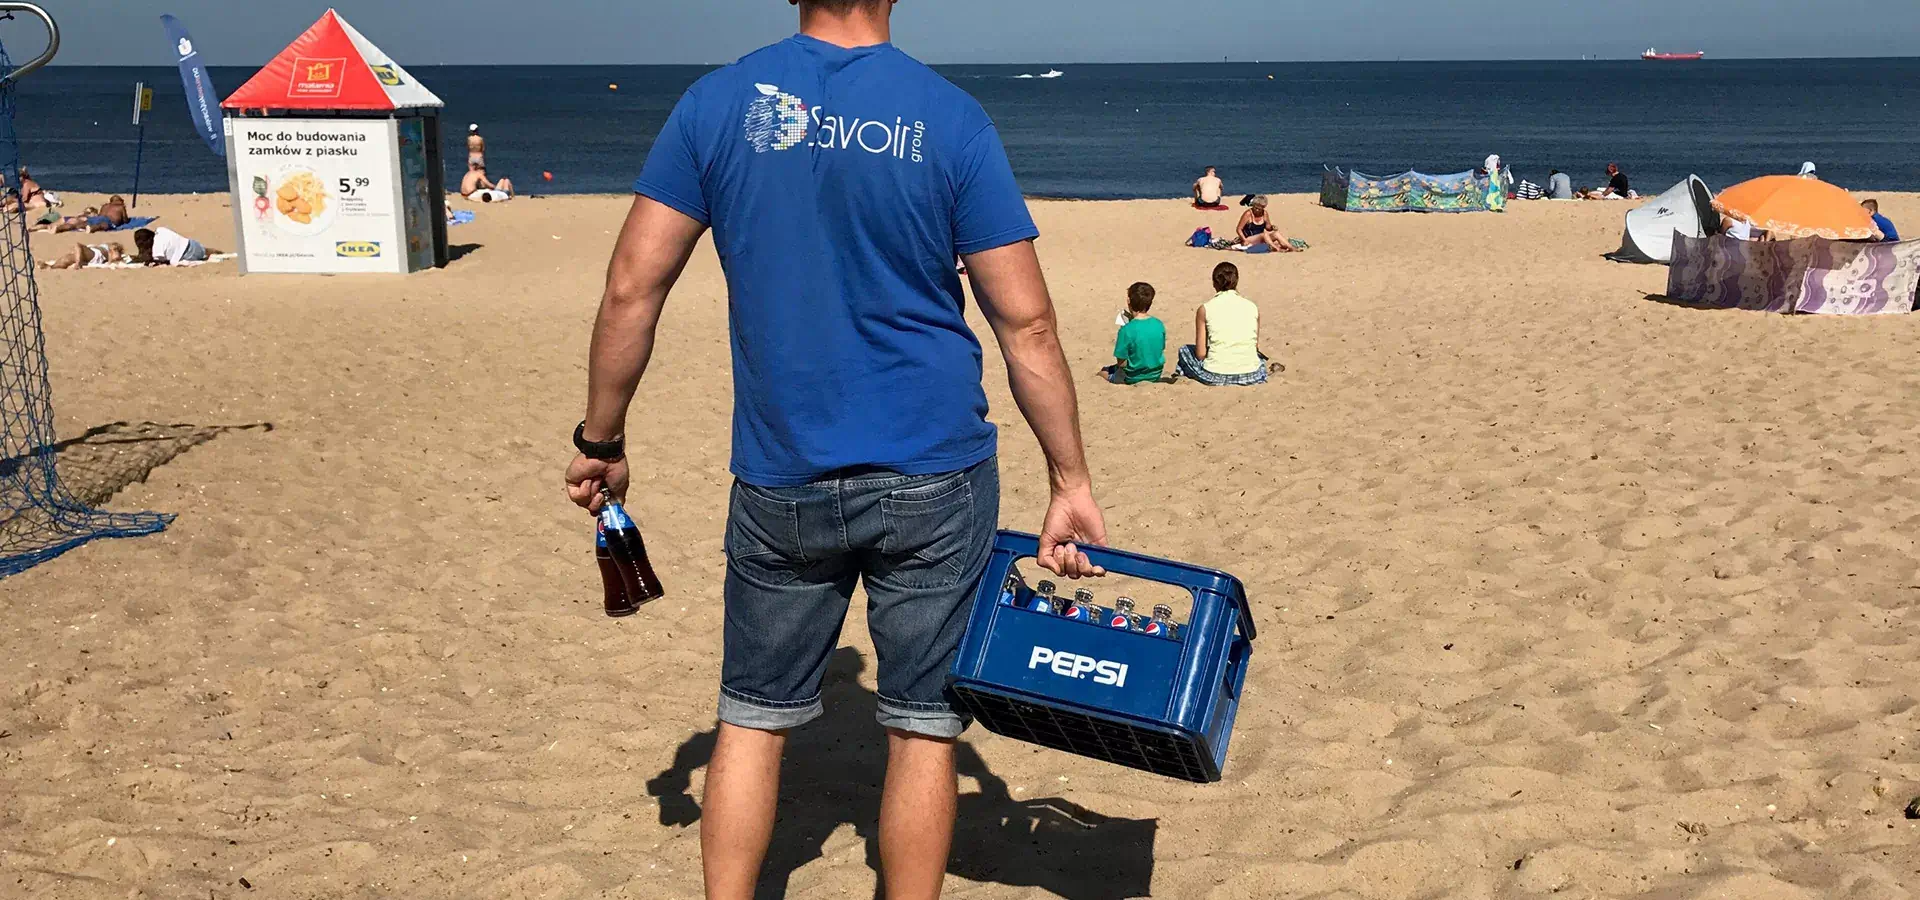 Mężczyzna z skrzynką Pepsi na plaży